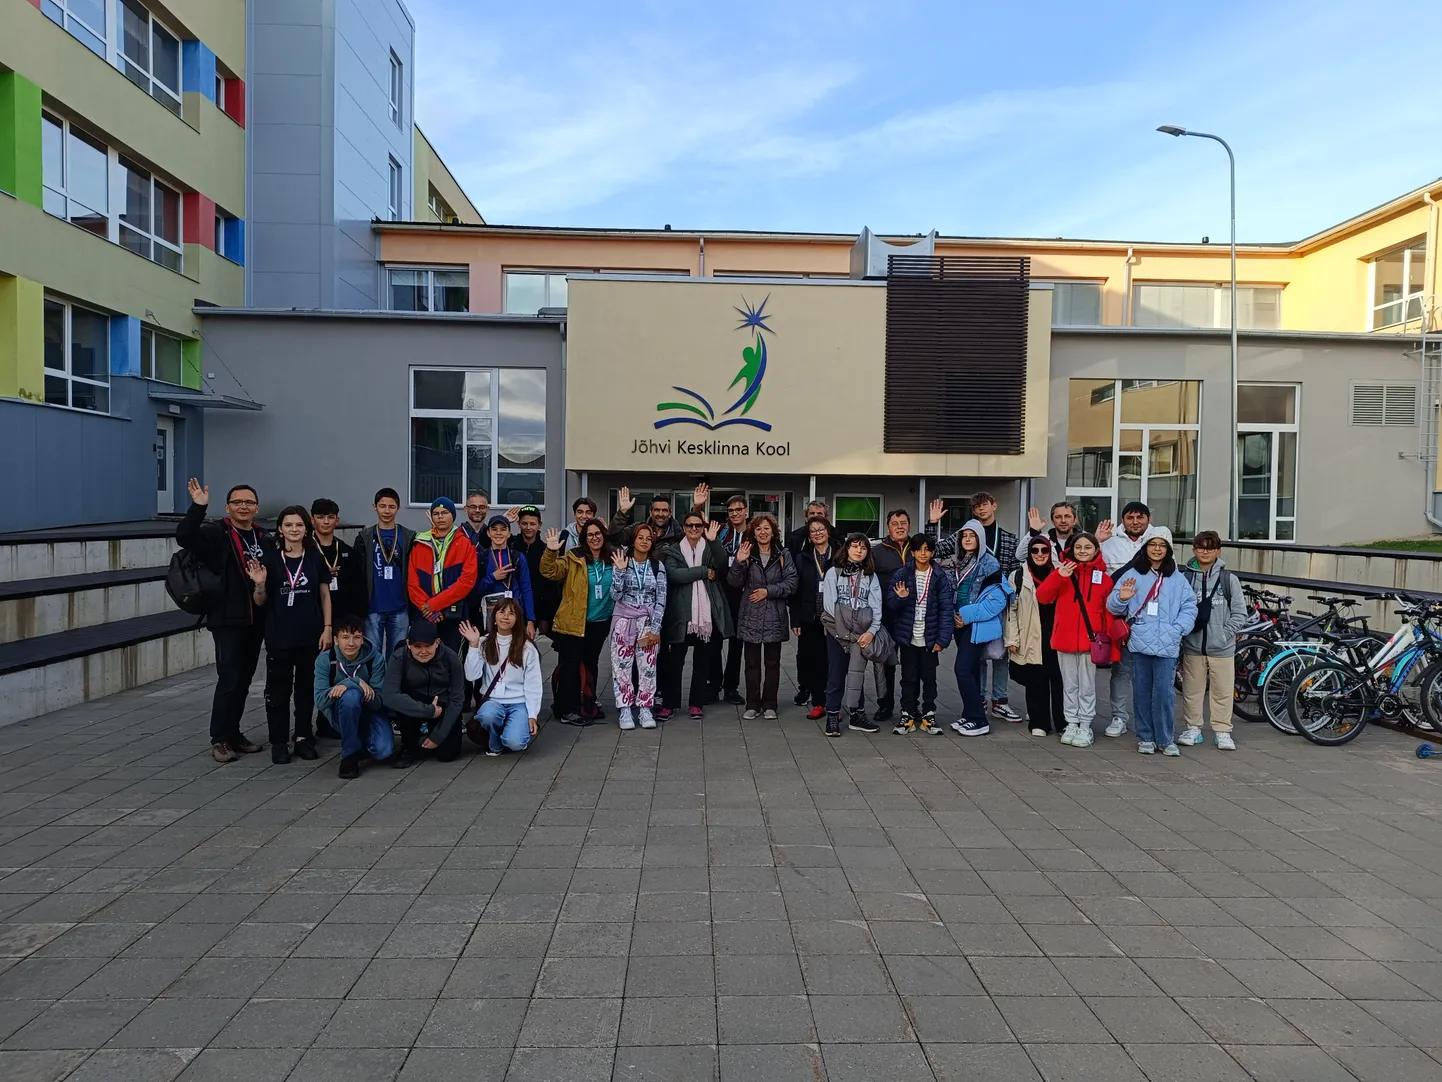 Участники международного проекта краткосрочного обмена учащимися перед Йыхвиской Кесклиннаской школой.